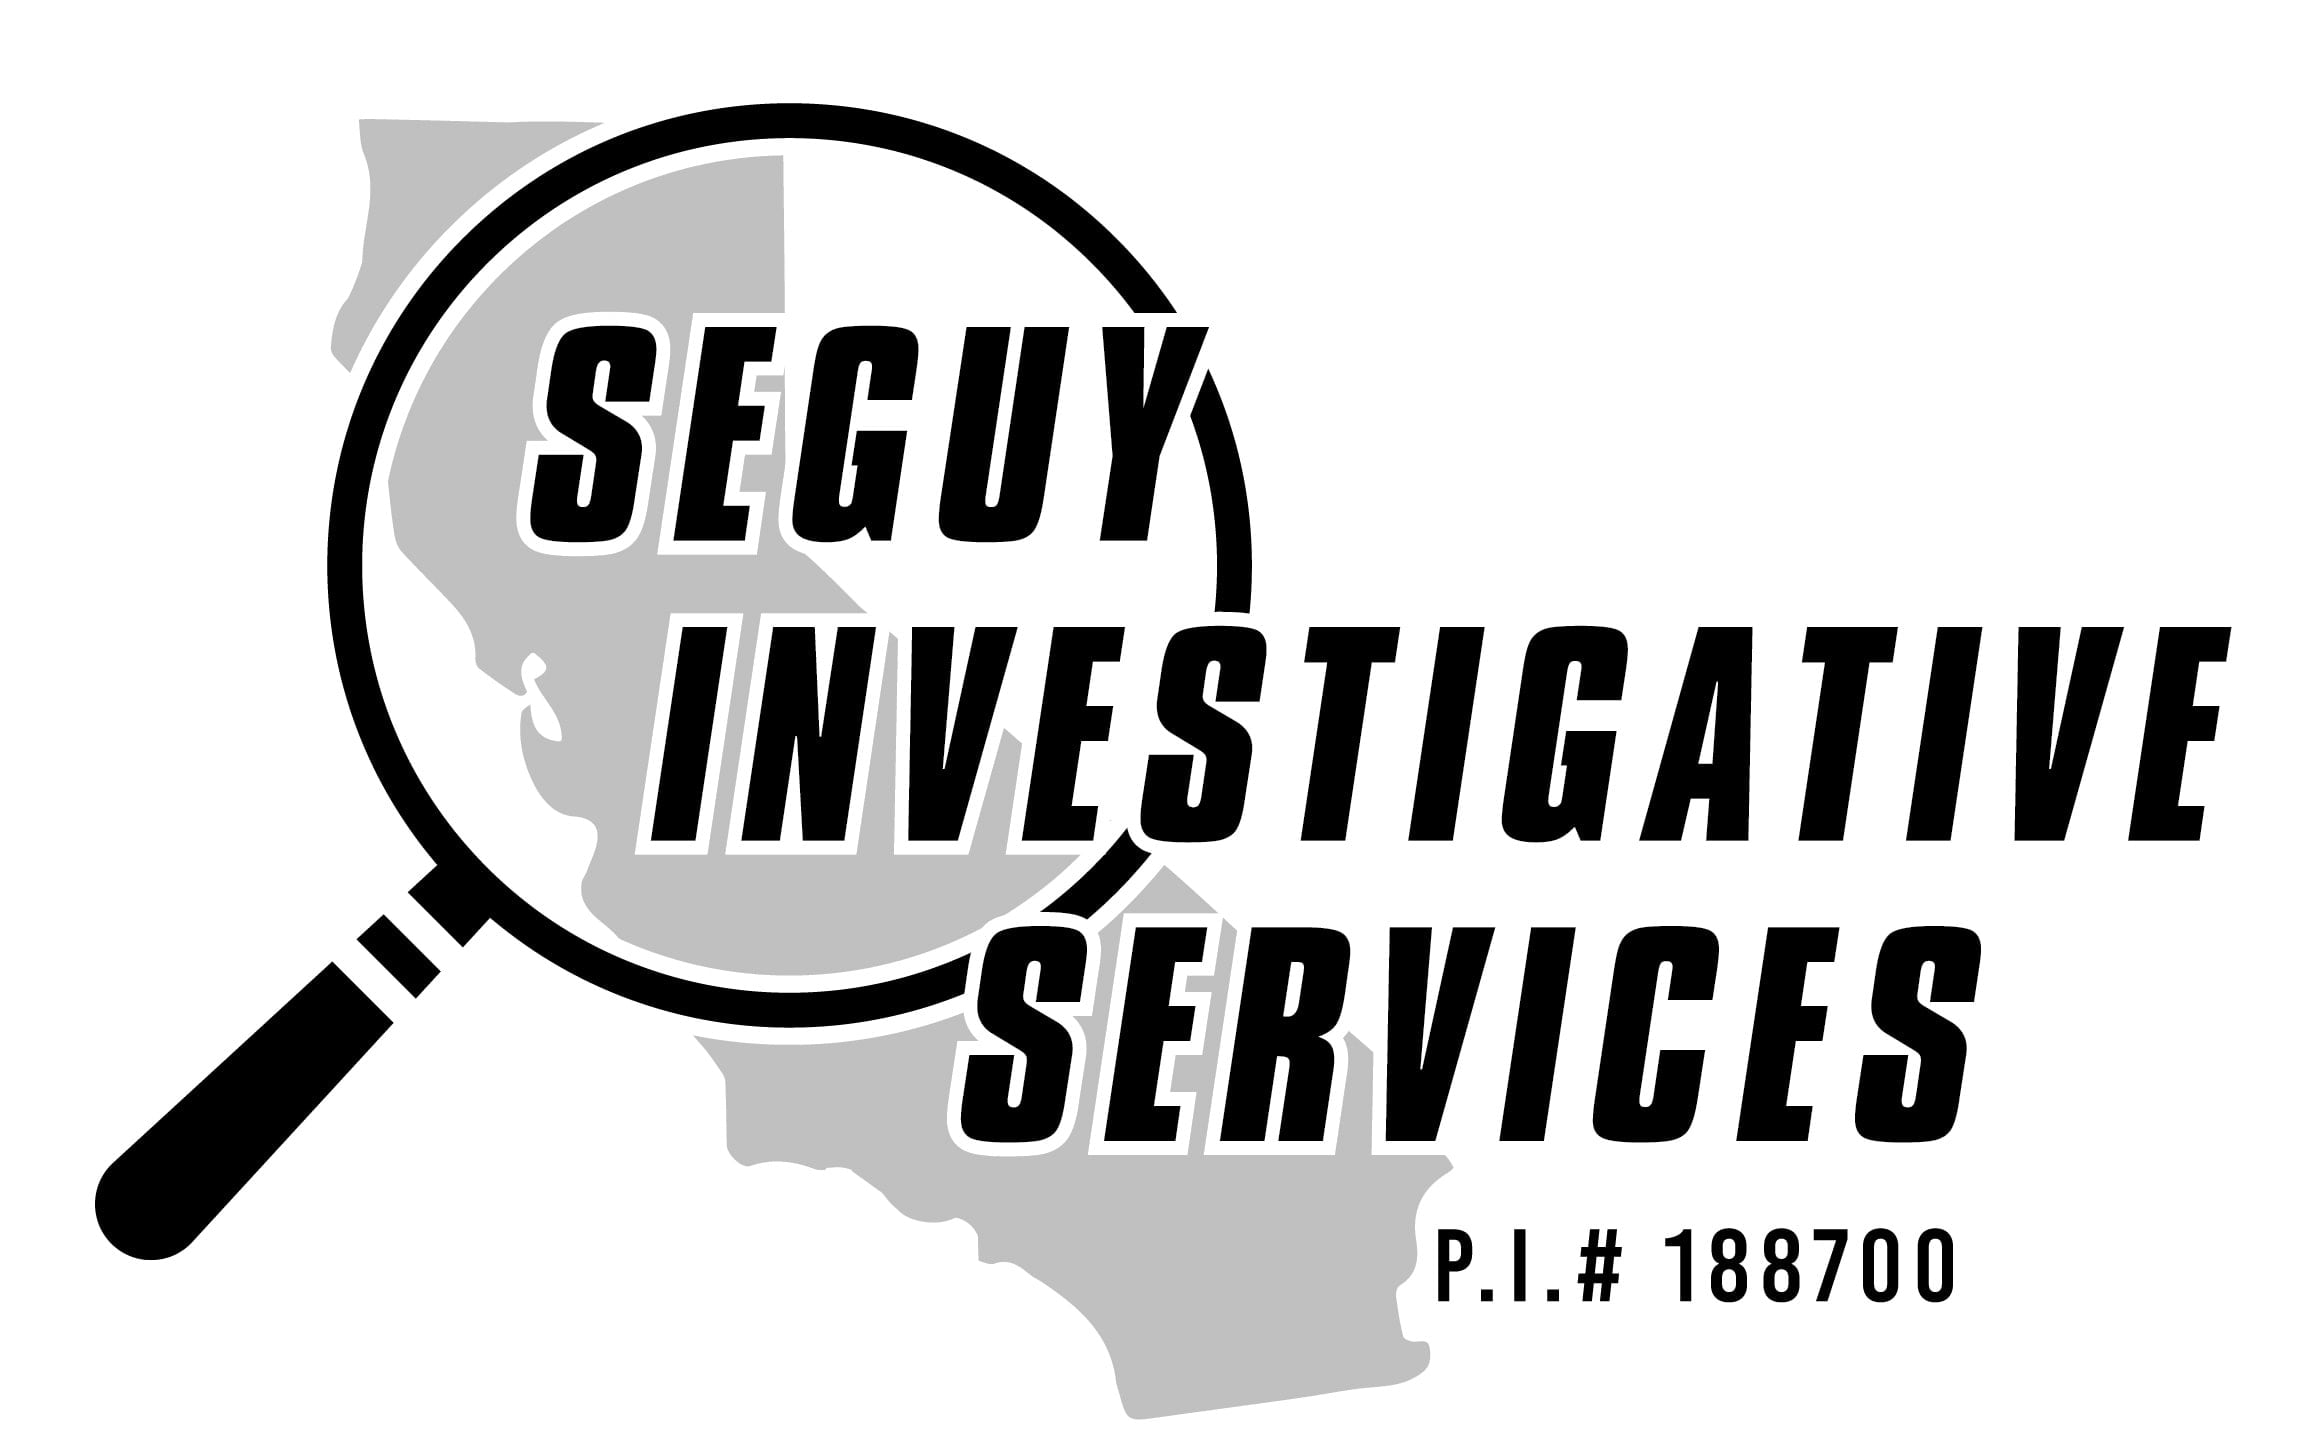 Seguy Investigative Services